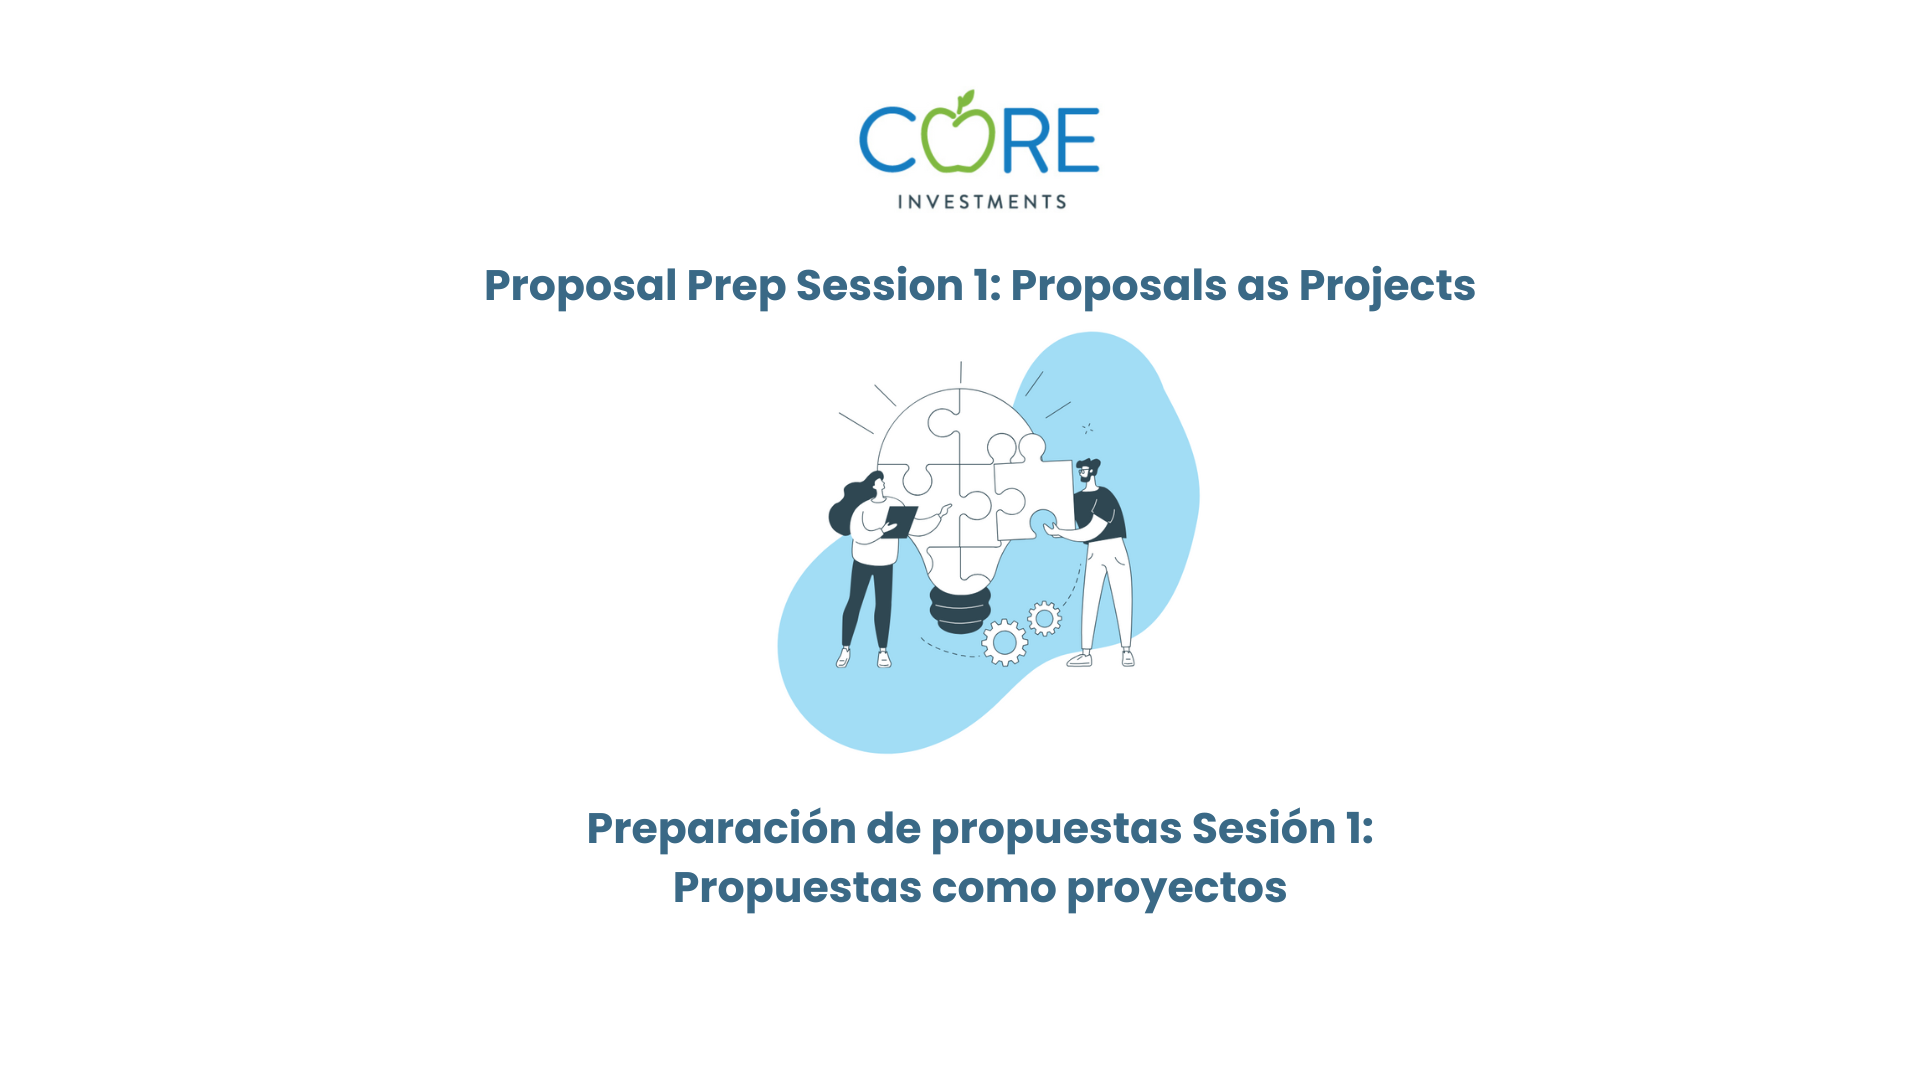 Sesión de preparación de propuestas 1: Las propuestas como proyectos